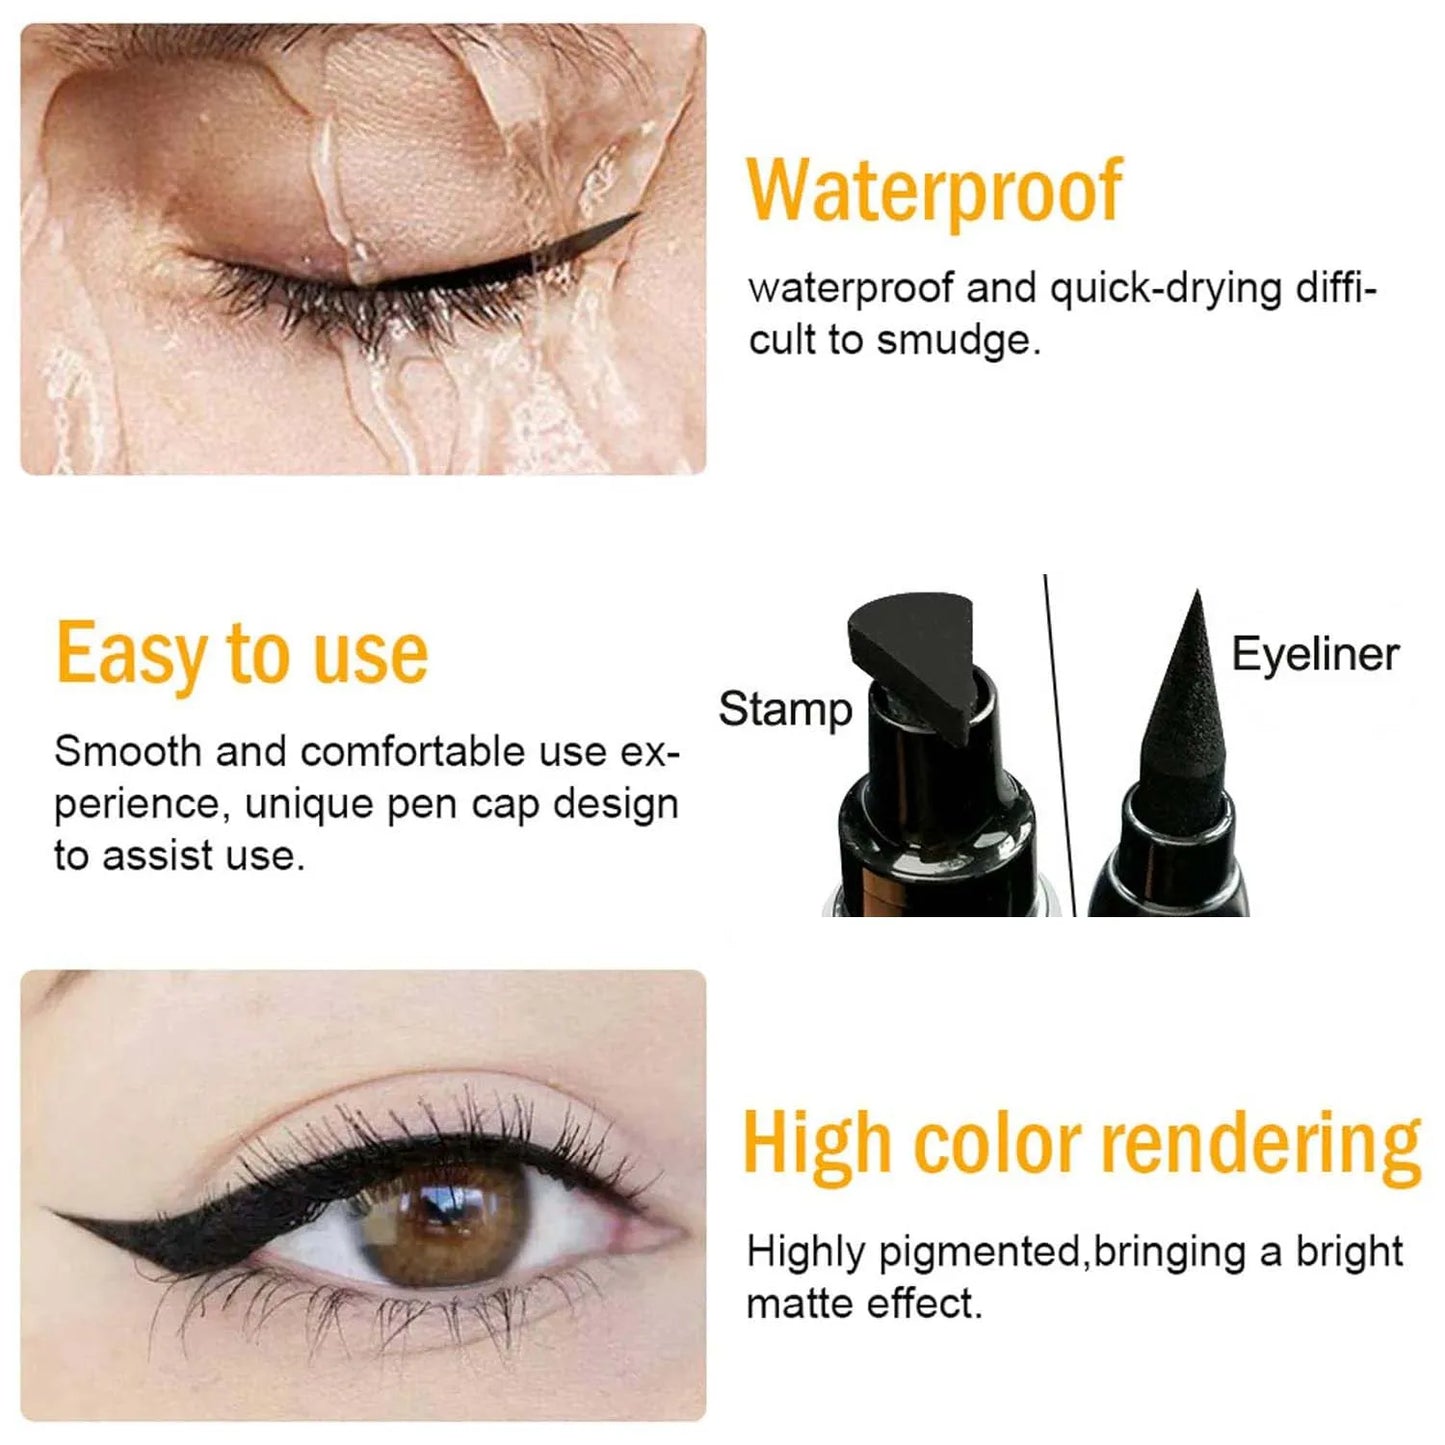 2 in 1 Waterproof Stamp Eyeliner